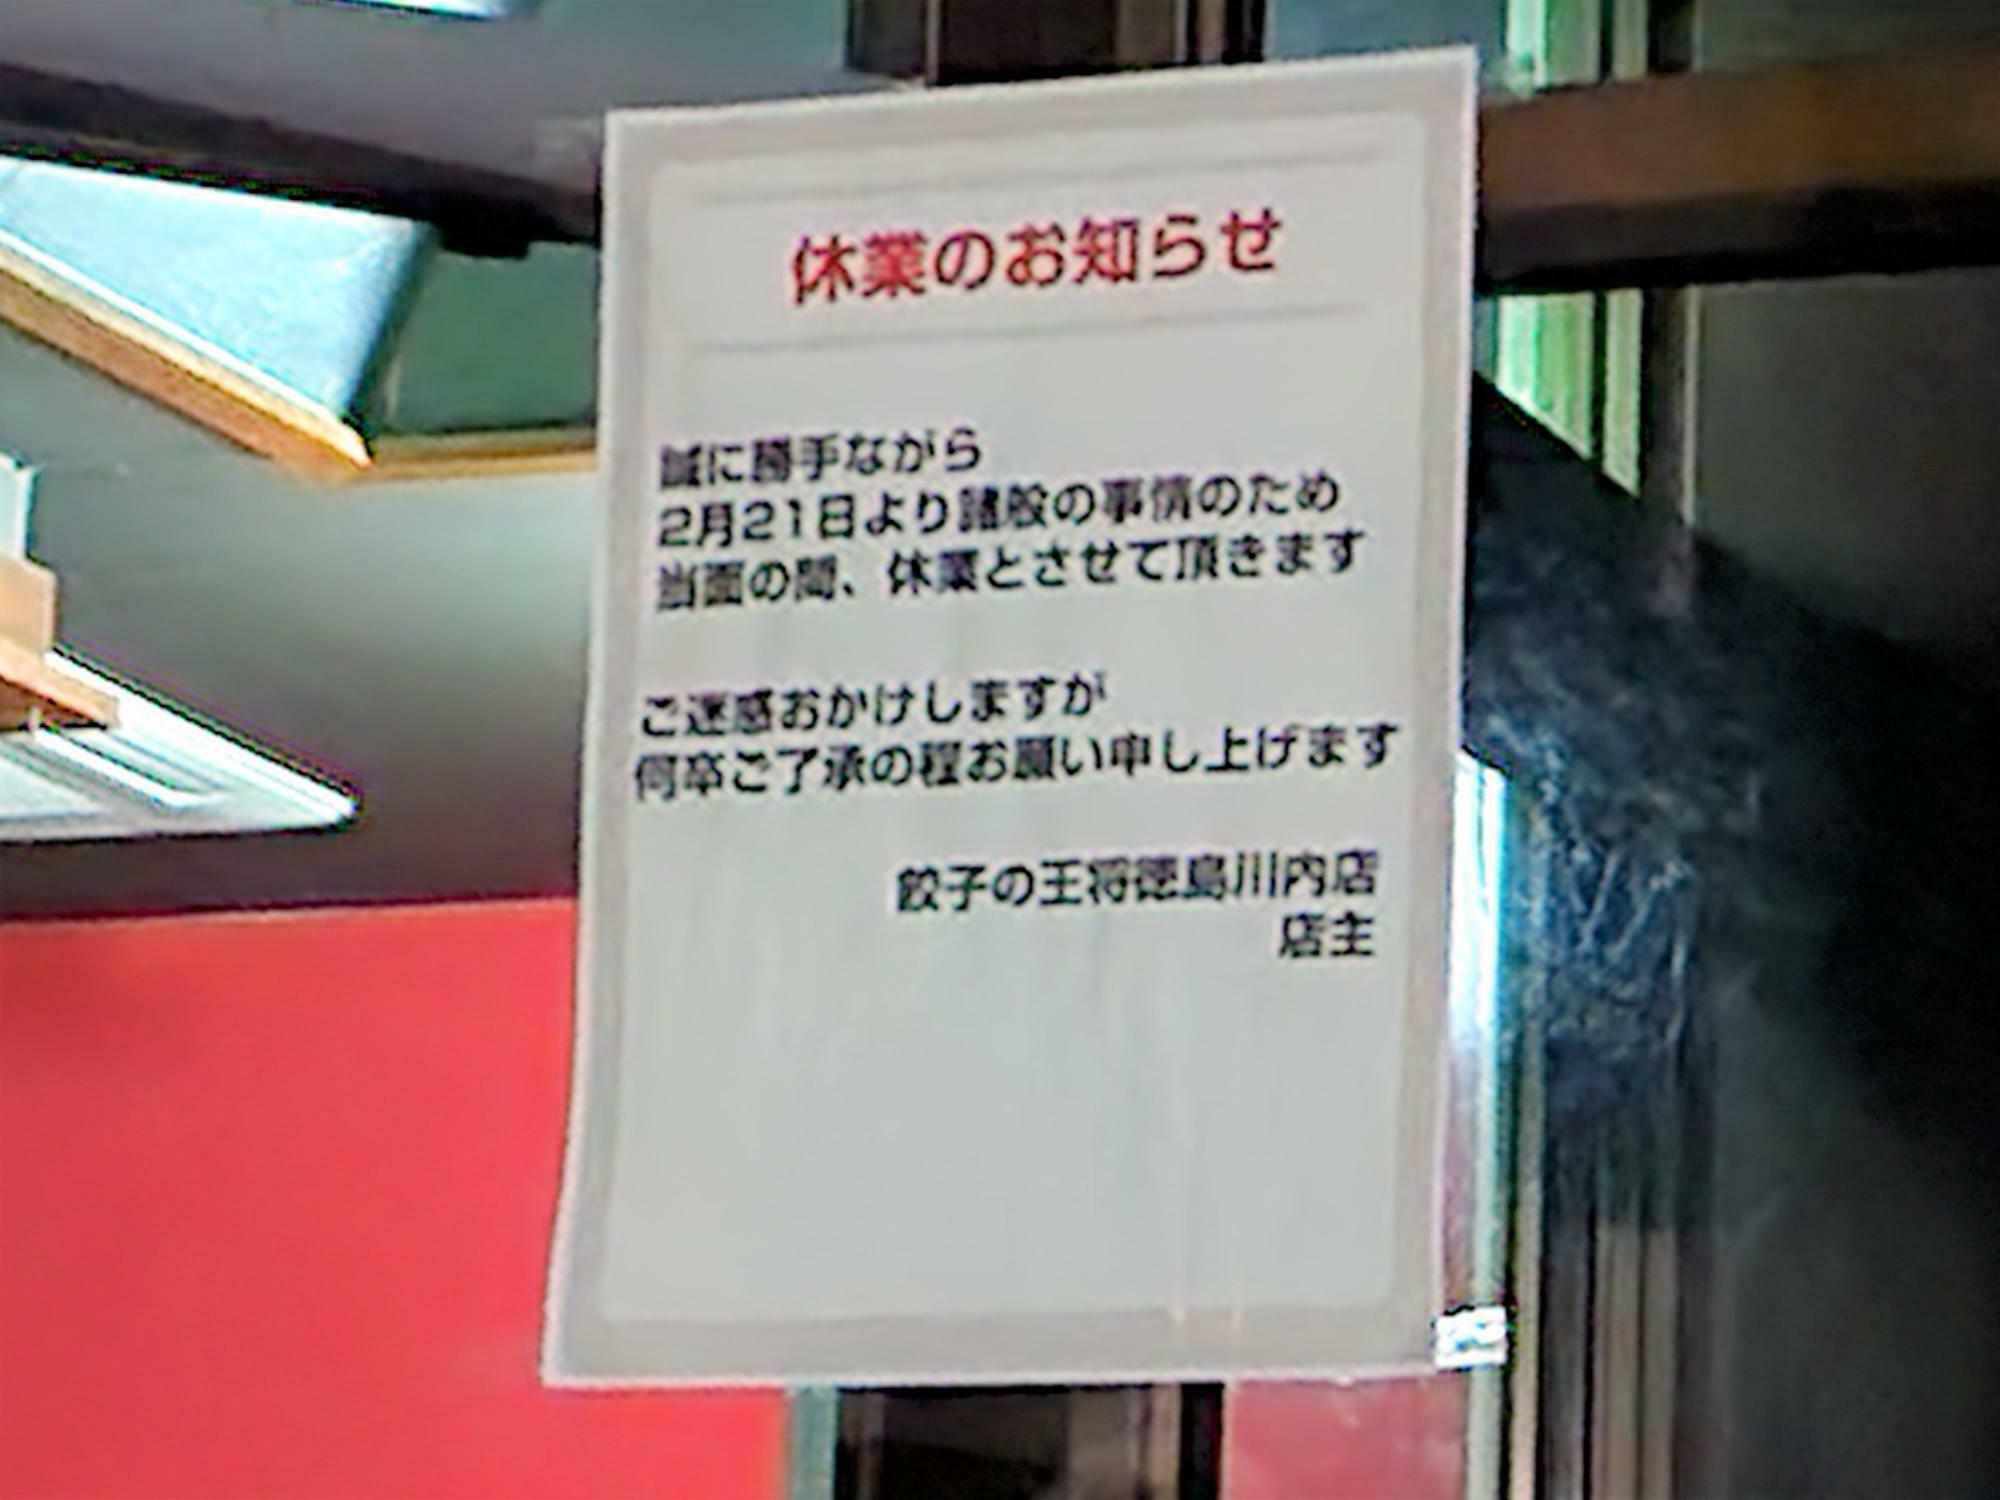 2023年4月30日に閉店した「餃子の王将 徳島川内店」の出入口に貼られていた貼り紙。